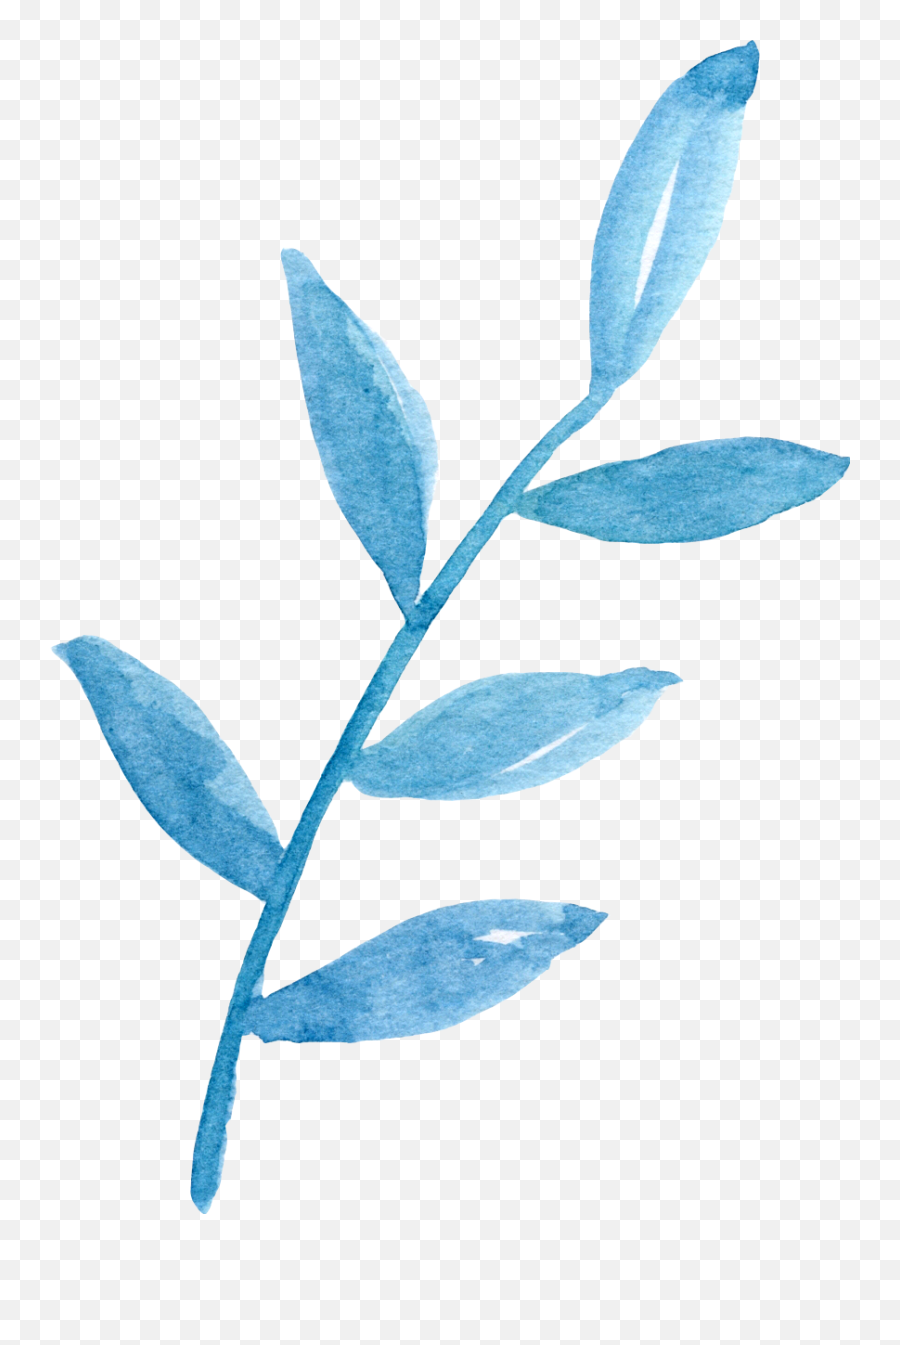 Ftestickers Watercolor Leaves Stem Teal Blue - Watercolor Blue Leaf Png,Watercolor Leaves Png